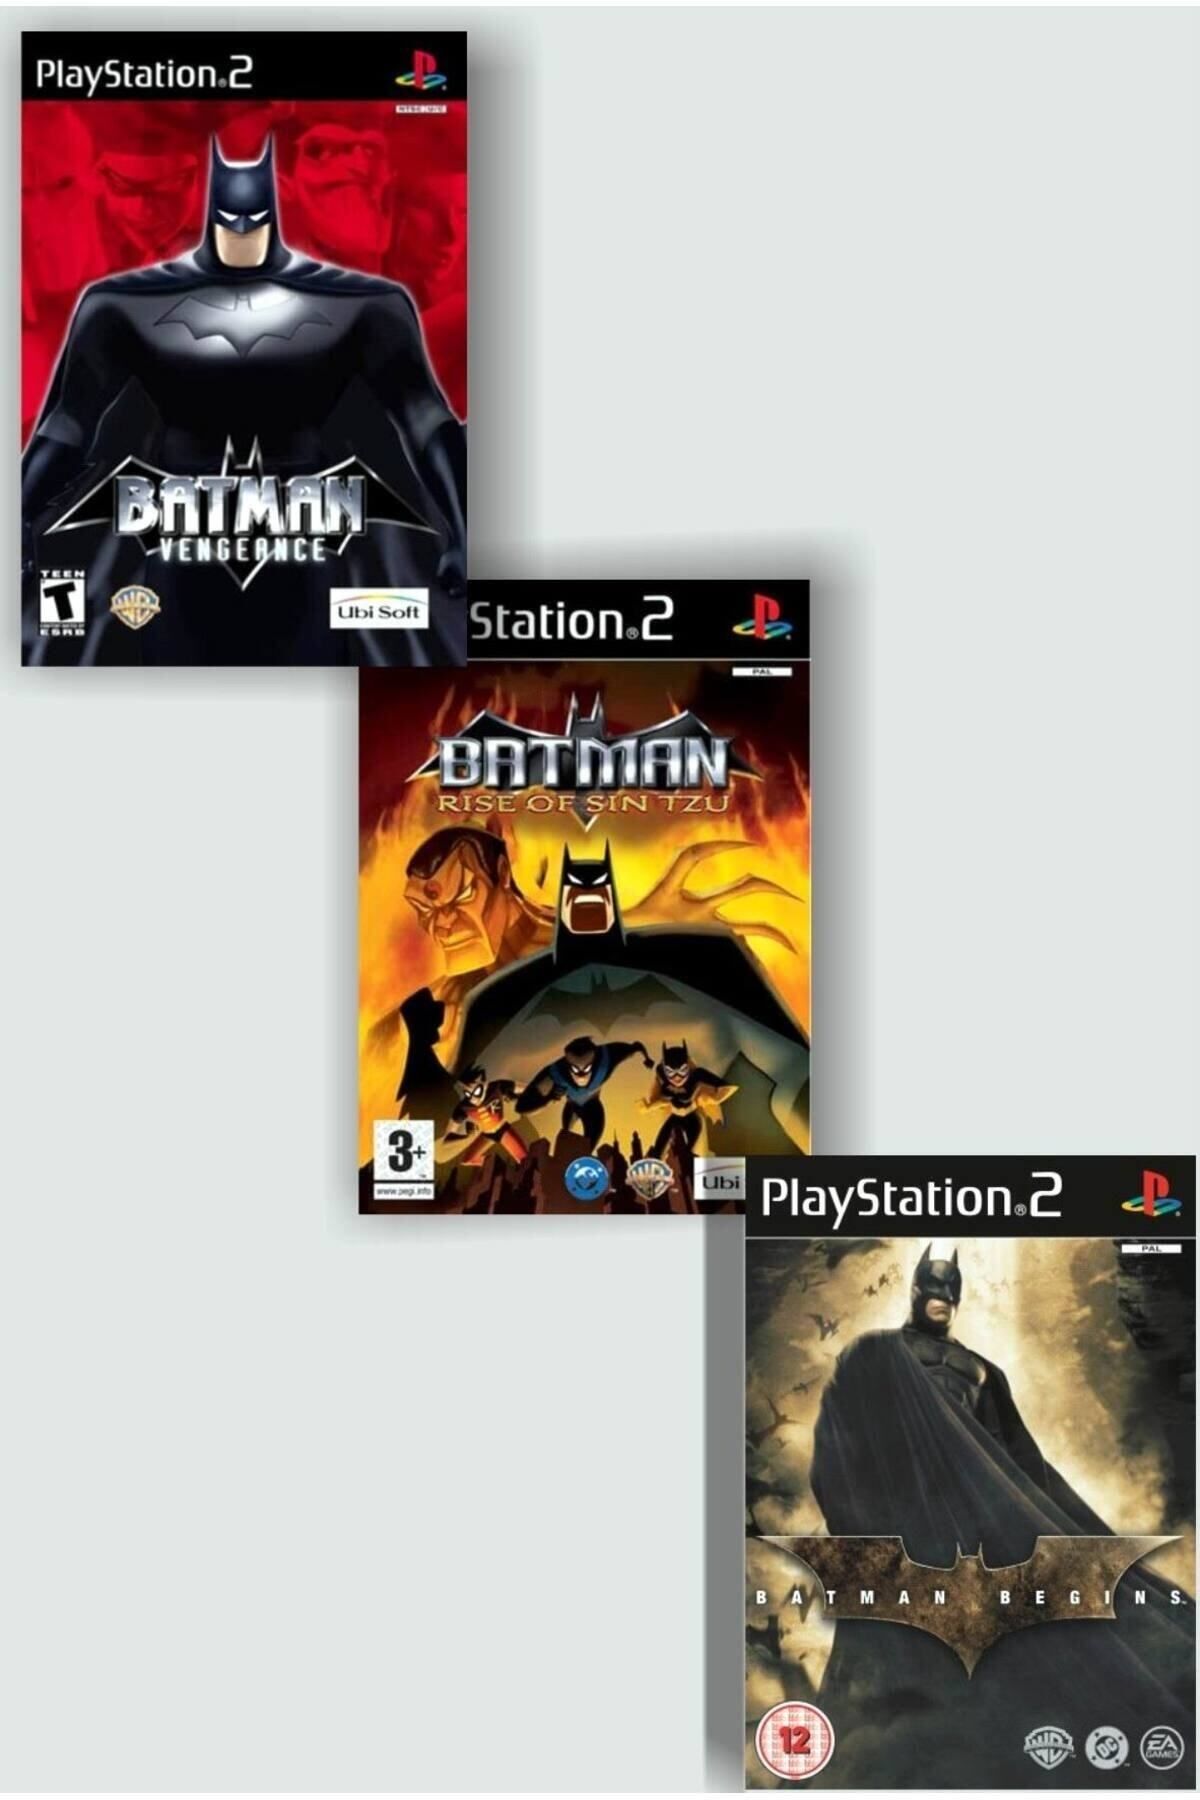 Wb Games PLAYSTATION 2 - BATMAN SERİSİ 3 OYUNLUK SET - SADECE ÇİPLİ CİHAZLAR İÇİN!